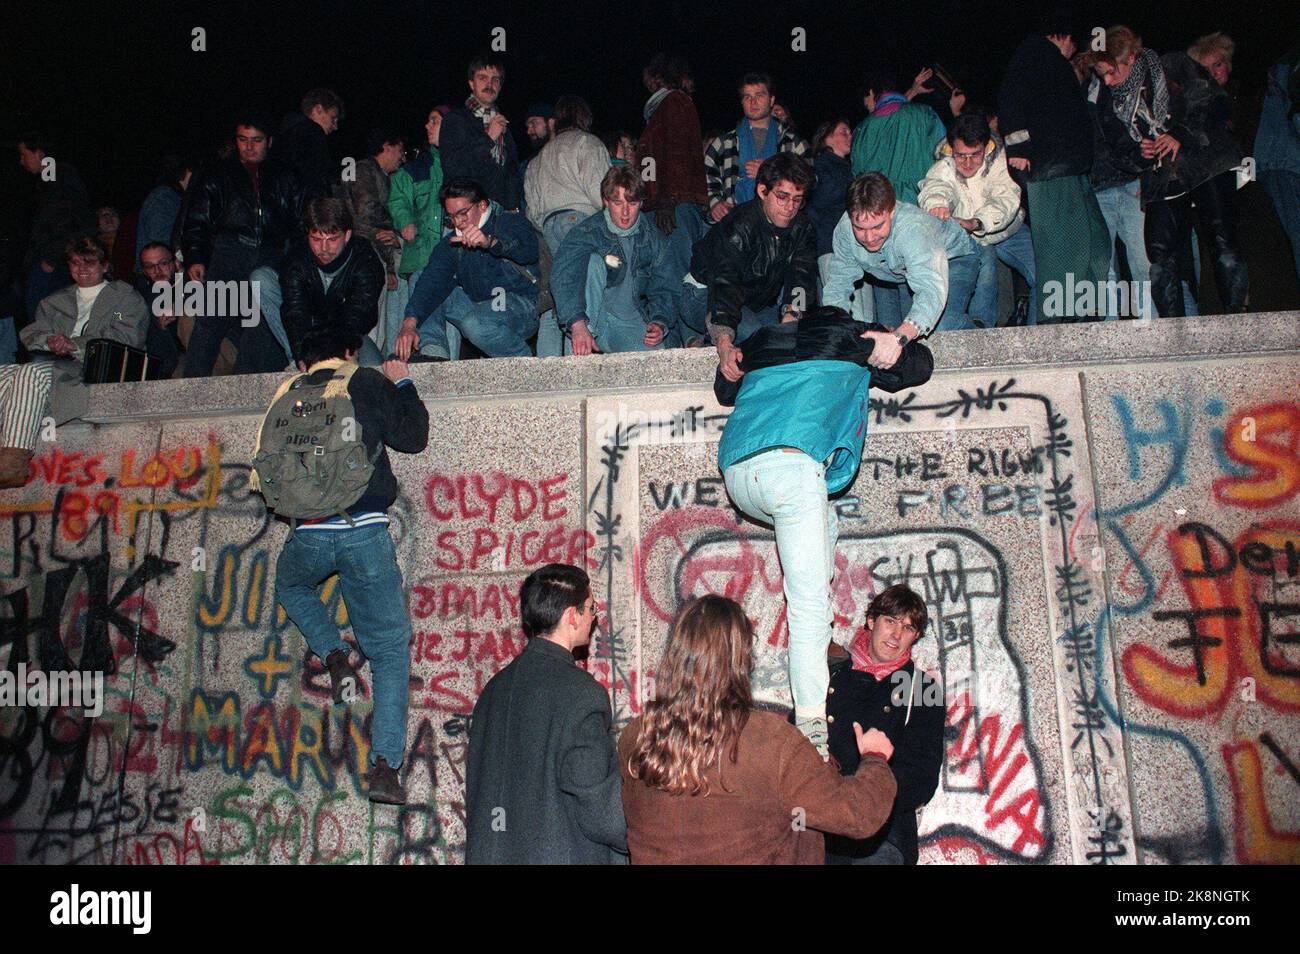 19891110 Fall der Berliner Mauer: Tausende Menschen krochen am Freitagabend auf die Mauer am Brandenburger Tor in Vest-Berlin. .. Foto von Jugendlichen, die die Wand hochklettern. Foto: Jørn H. Moen / NTB Stockfoto